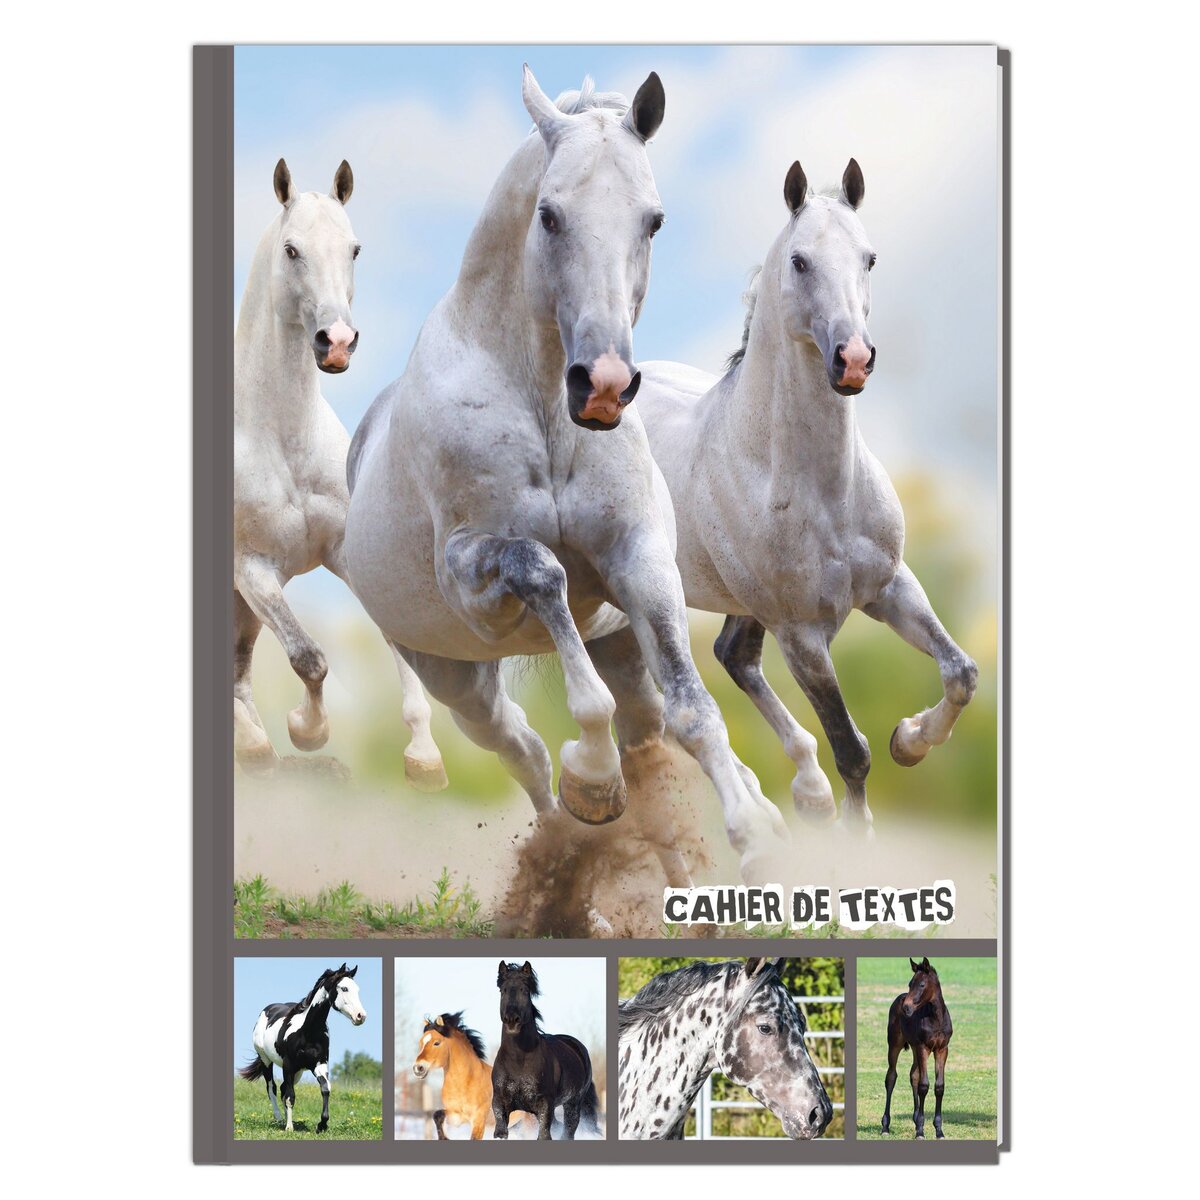 Cahier de texte fille 15,5x21,5cm 204 pages - 3 chevaux Blanc au galop